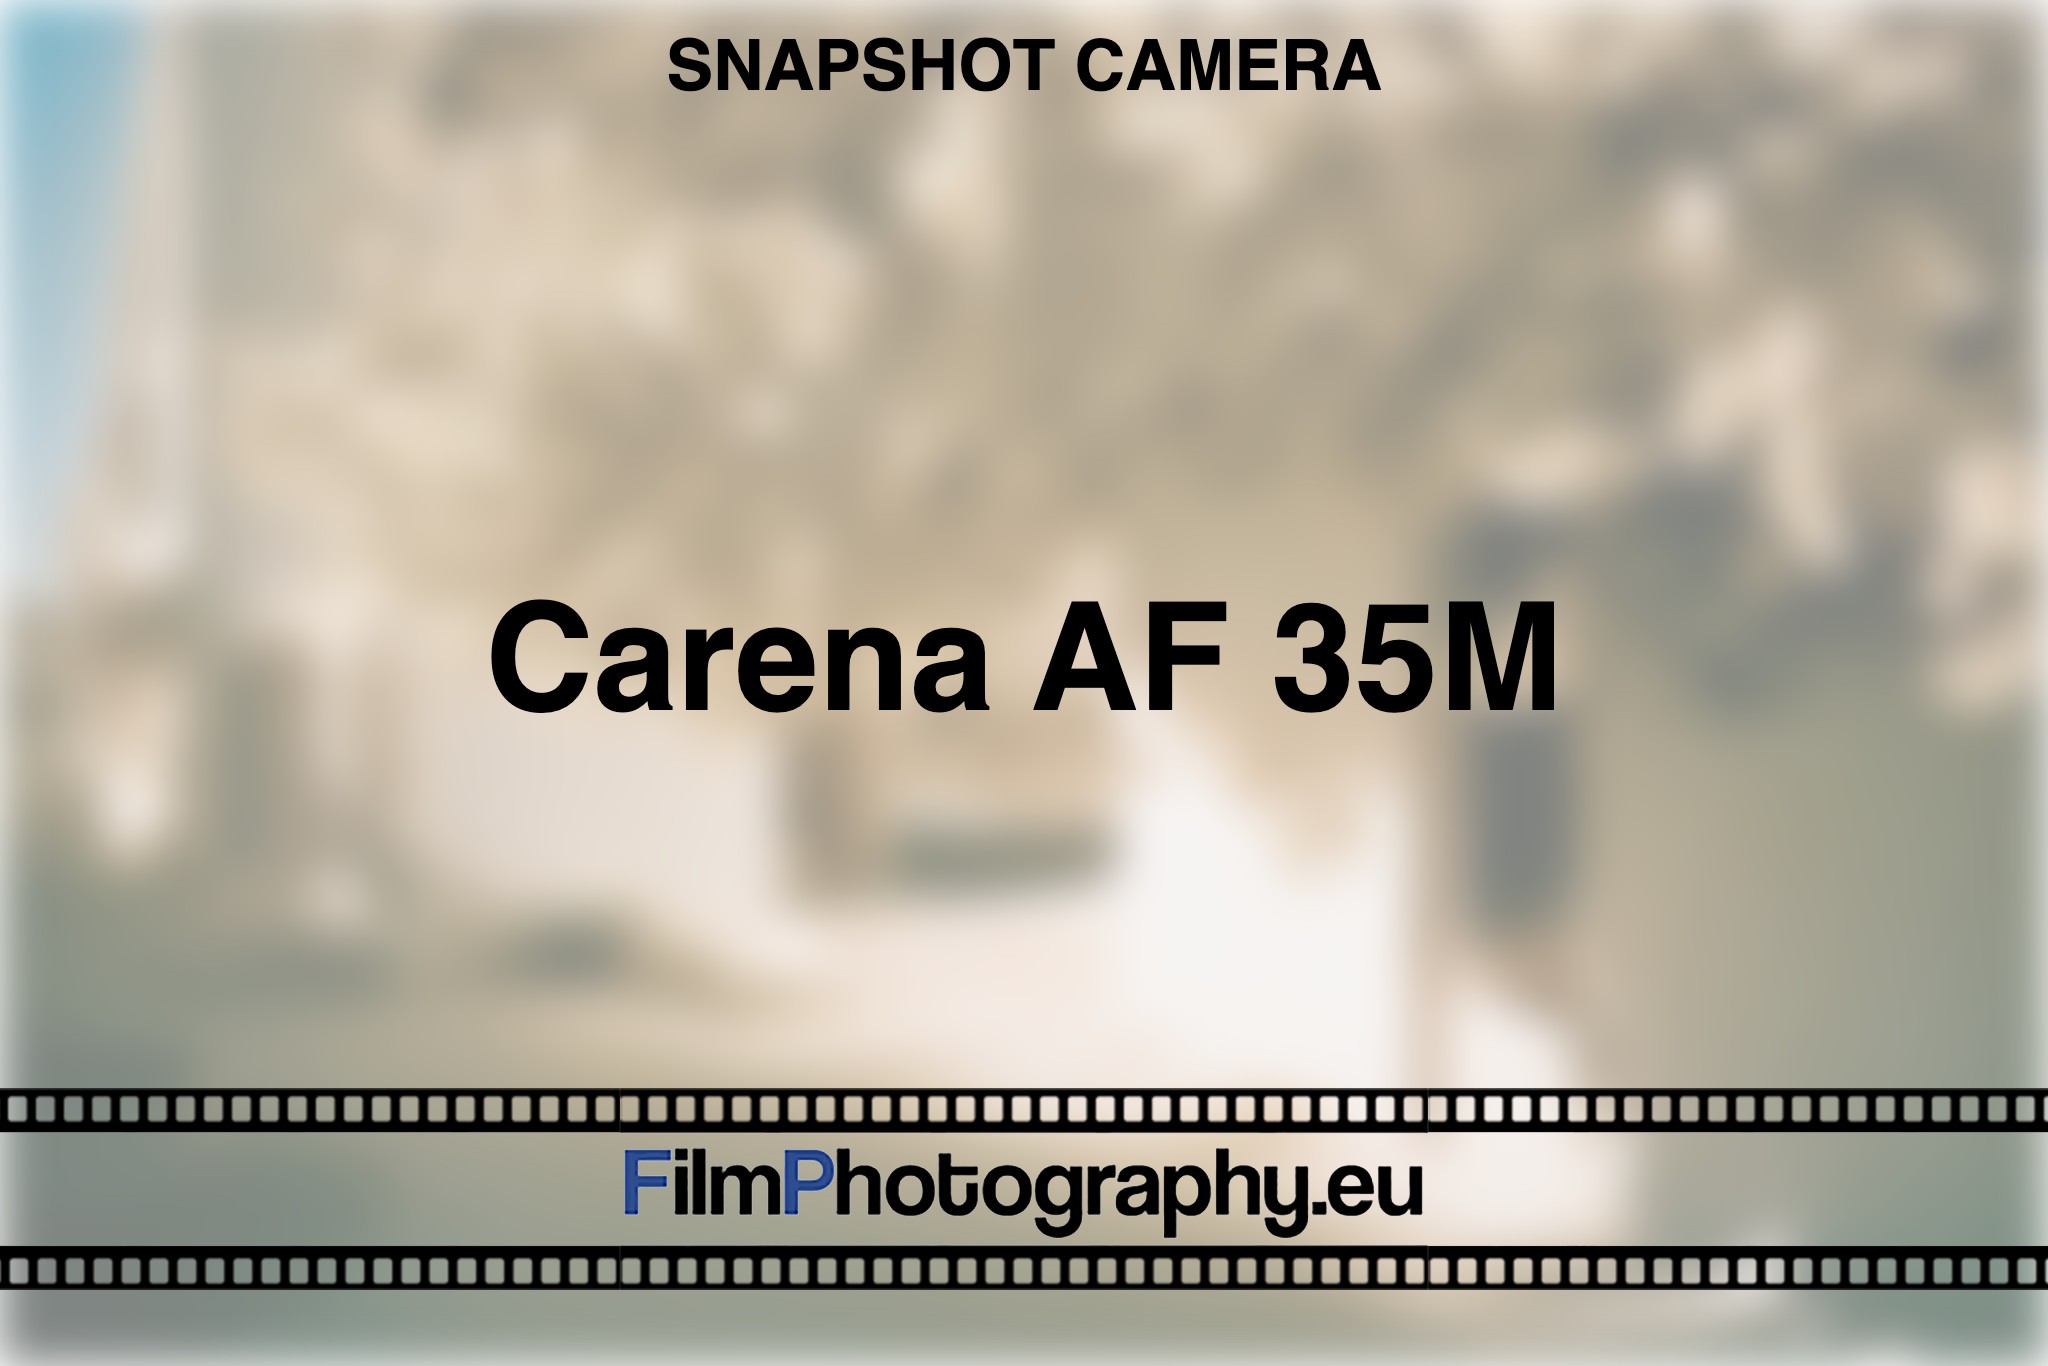 carena-af-35m-snapshot-camera-bnv